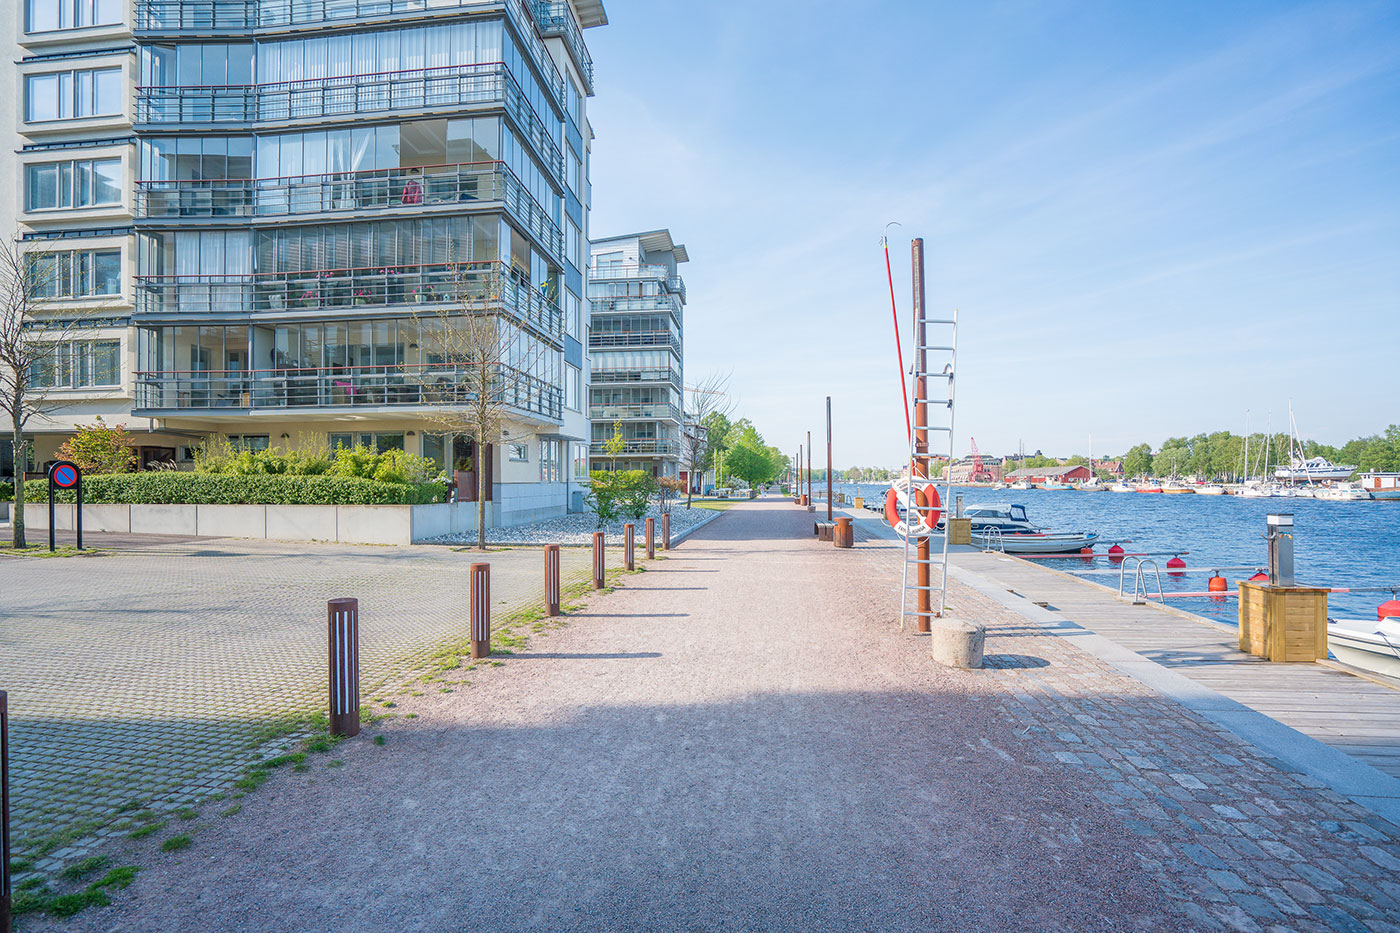 Vy längs med Nissan vid nybyggda lägenheter och båtplatser på söder Halmstad